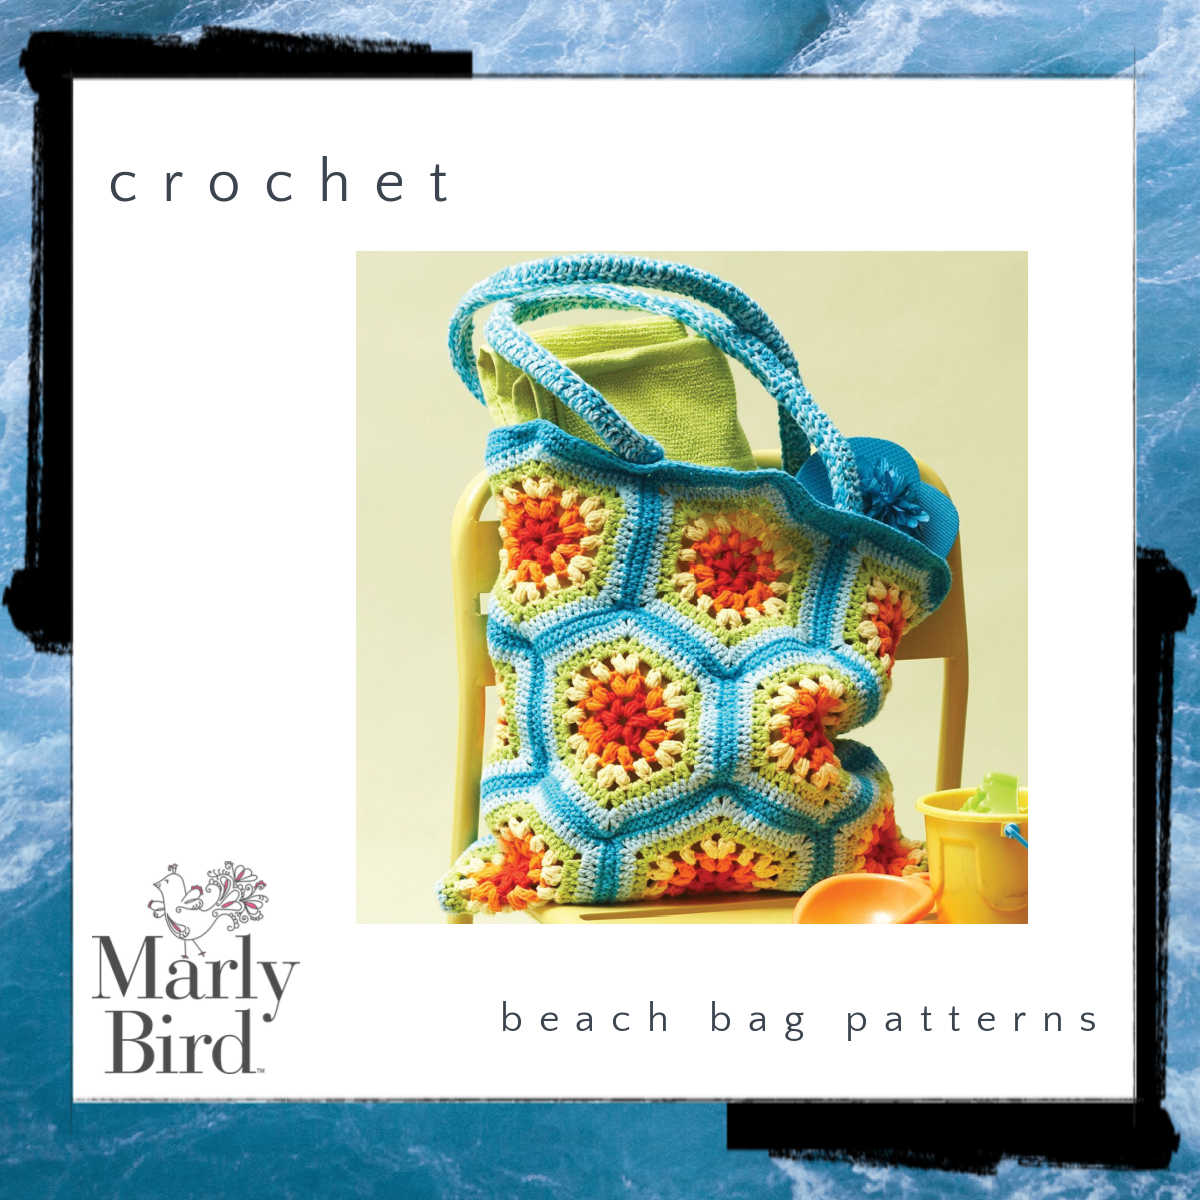 crochet beach bag patterns - Marly Bird